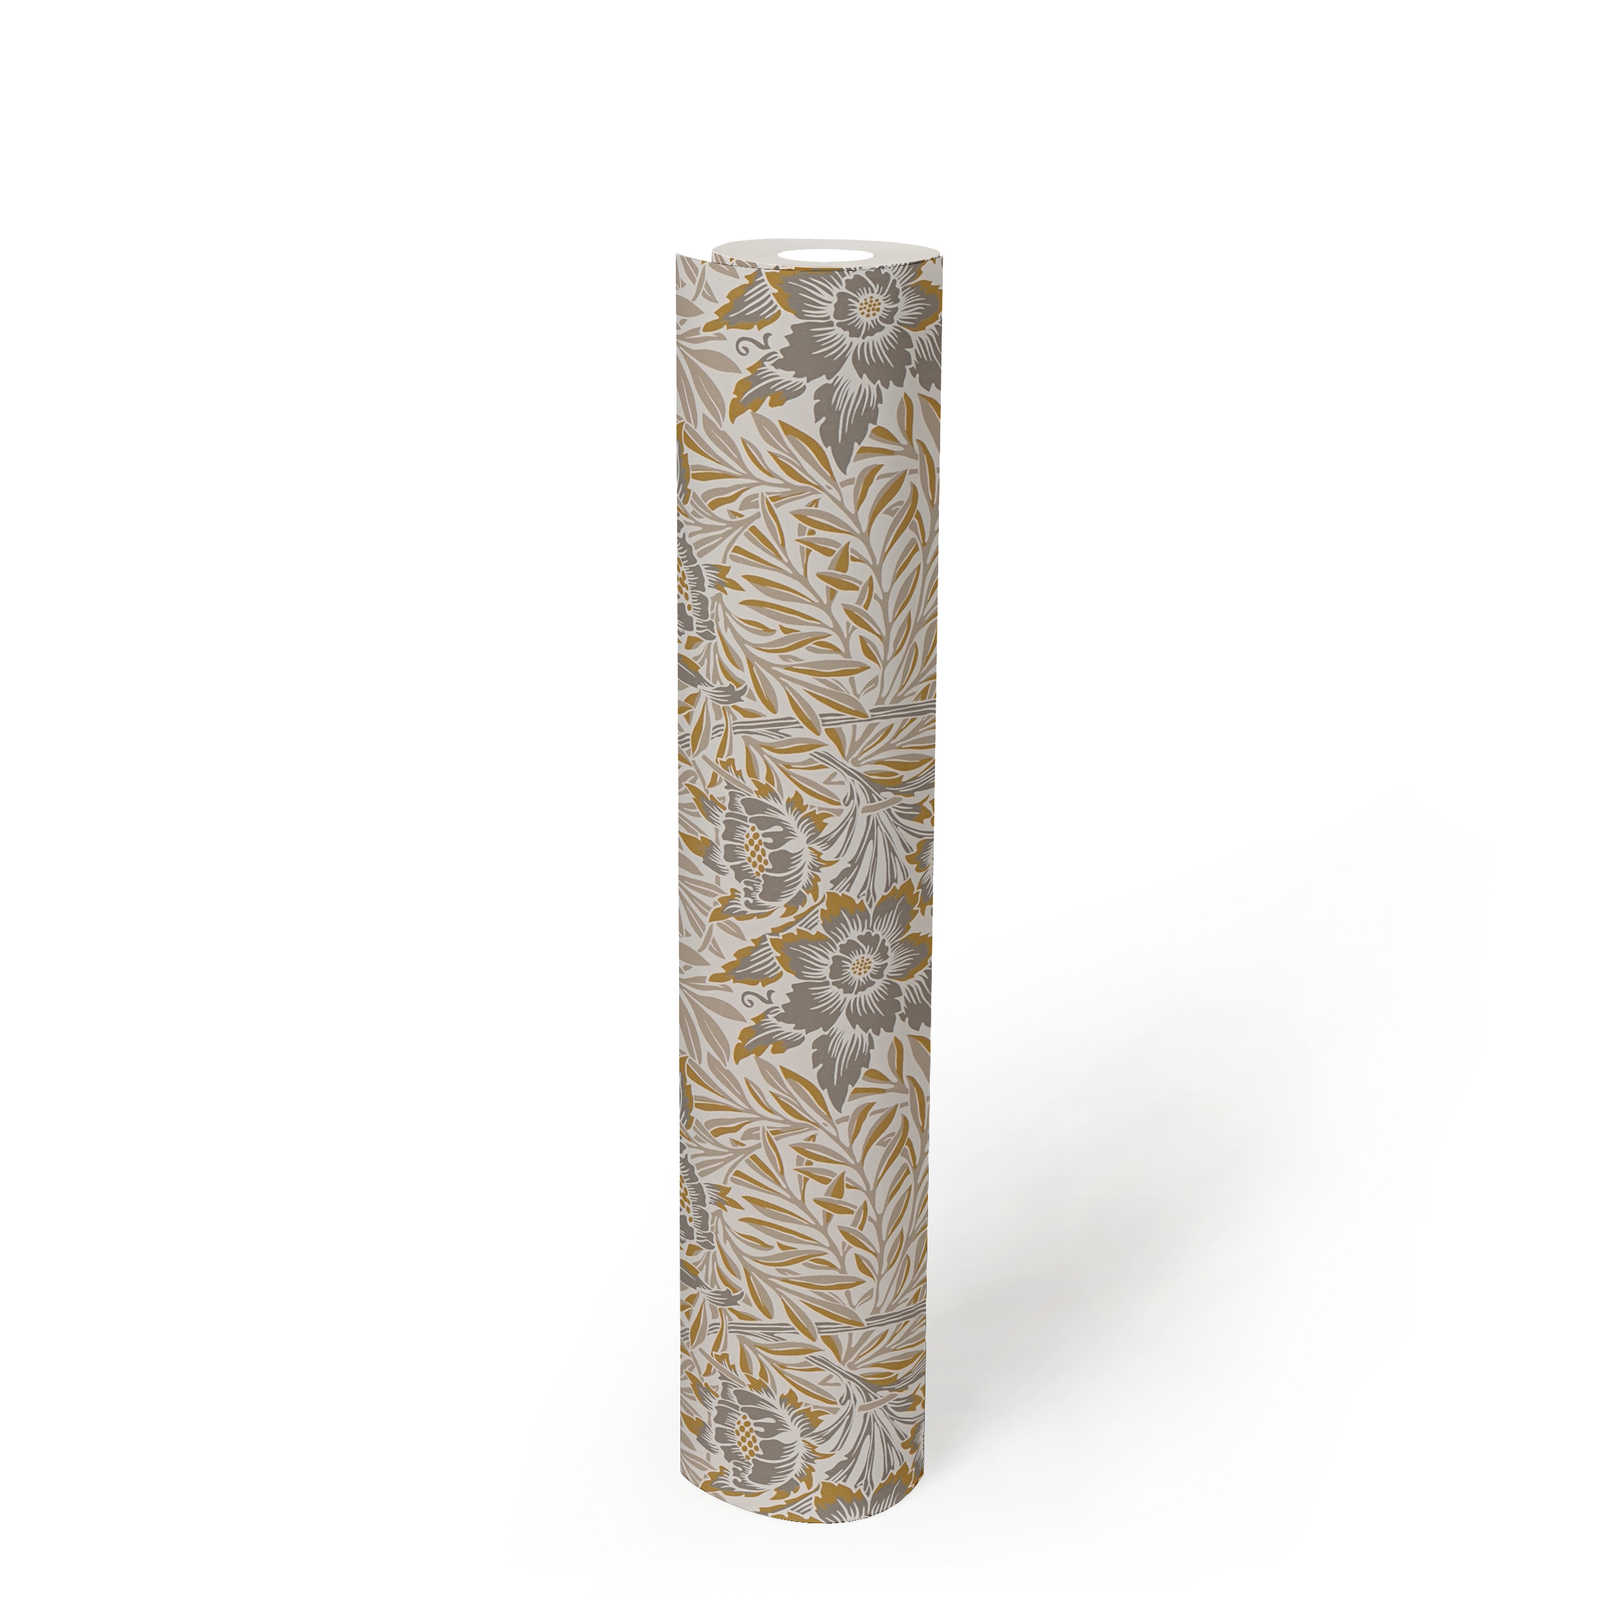             Vliestapete mit verschiedenen Blumen und Blätterranken – Gold, Beige, Silber
        